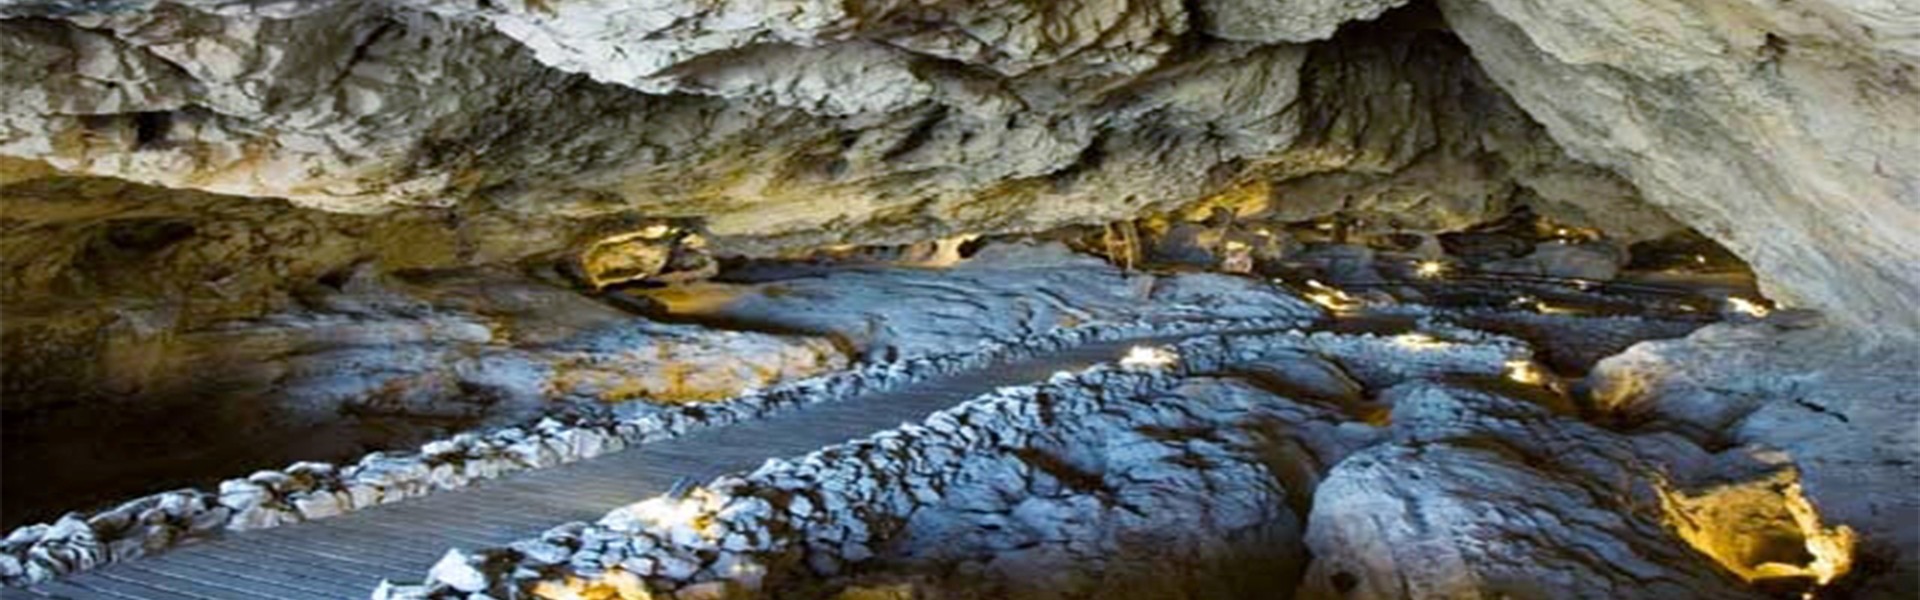 Bienvenidos a la Cueva de las Ventanas (Cuevas de piñar)